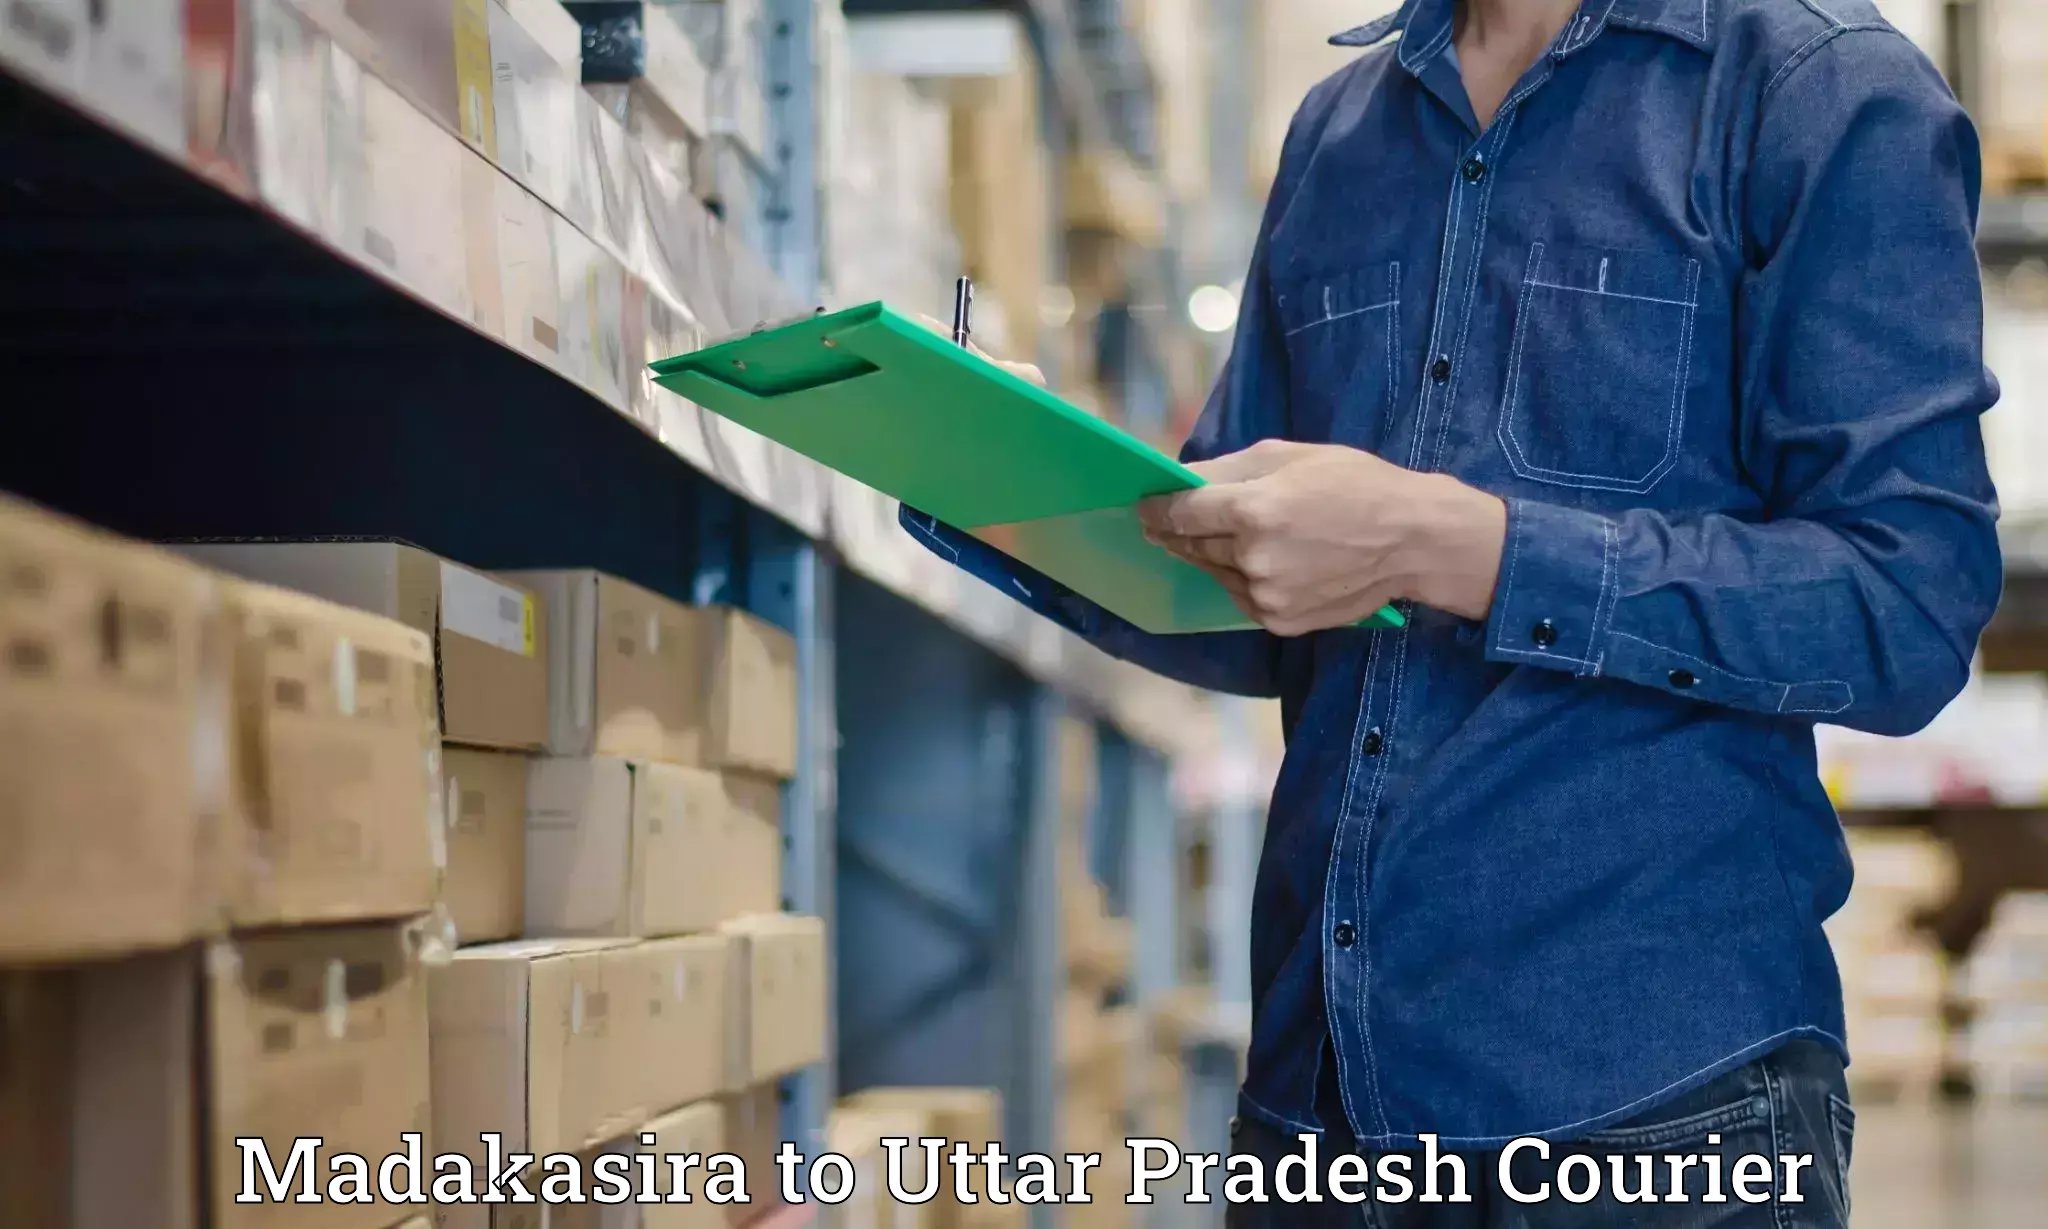 Courier insurance Madakasira to Aligarh